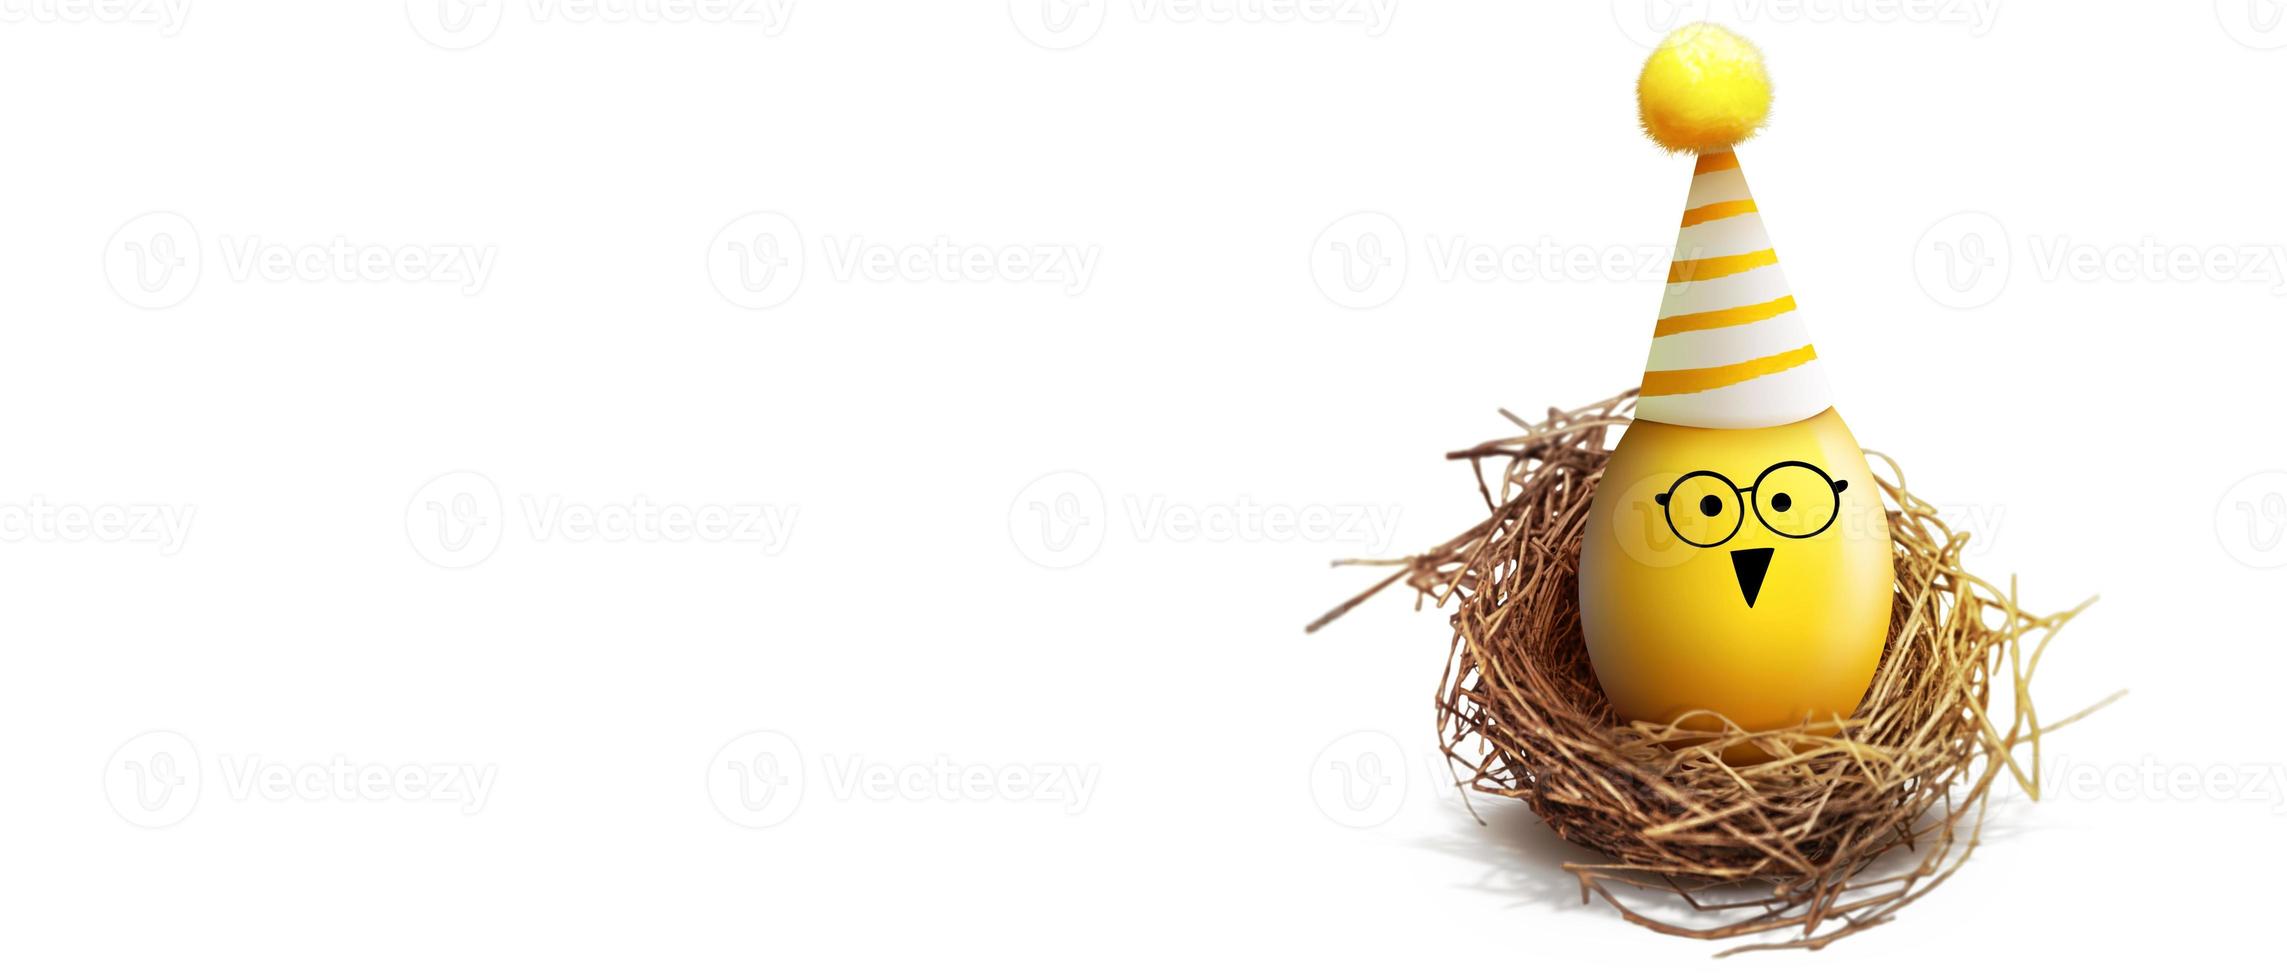 lindo fundo de páscoa com ovos de páscoa coloridos foto